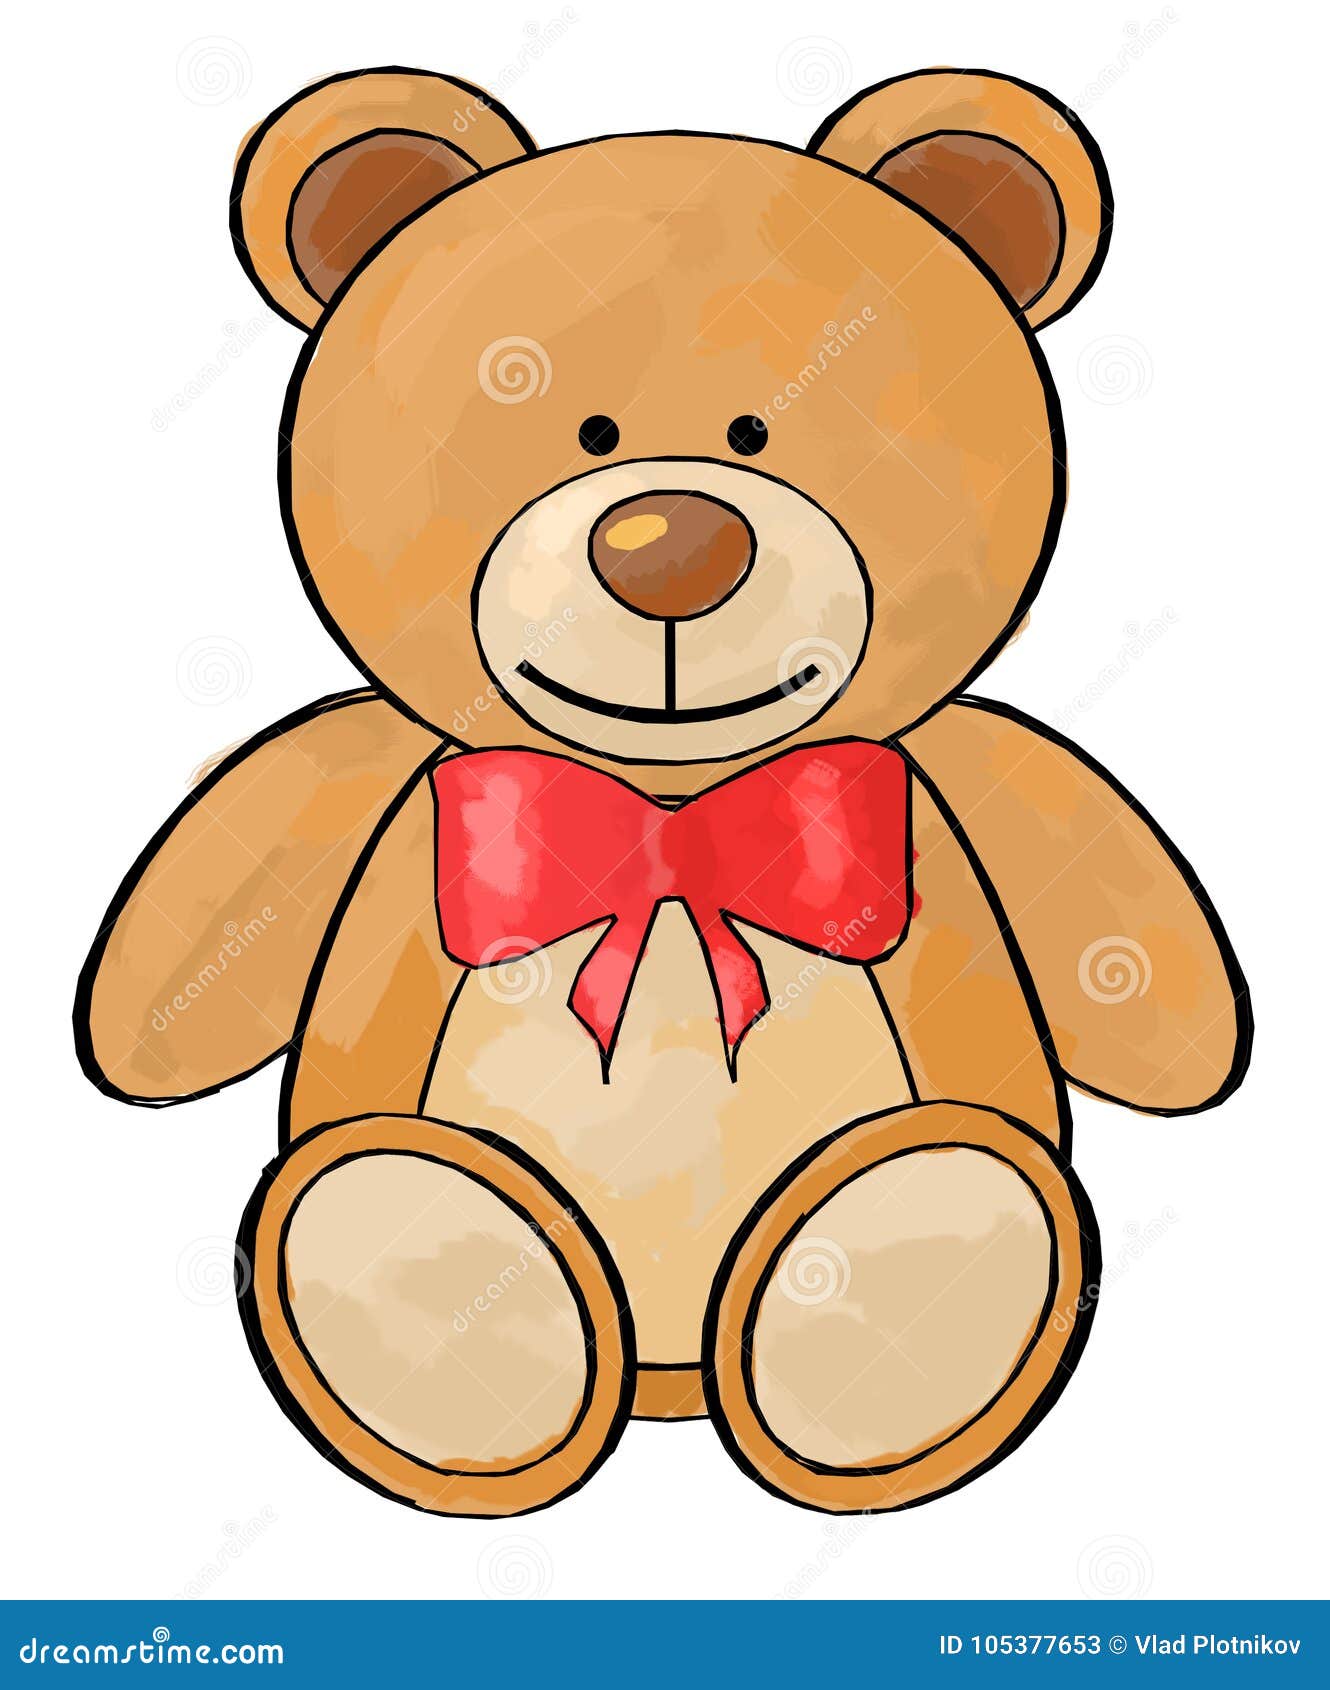 Рисунок рыжего плюшевого медведя